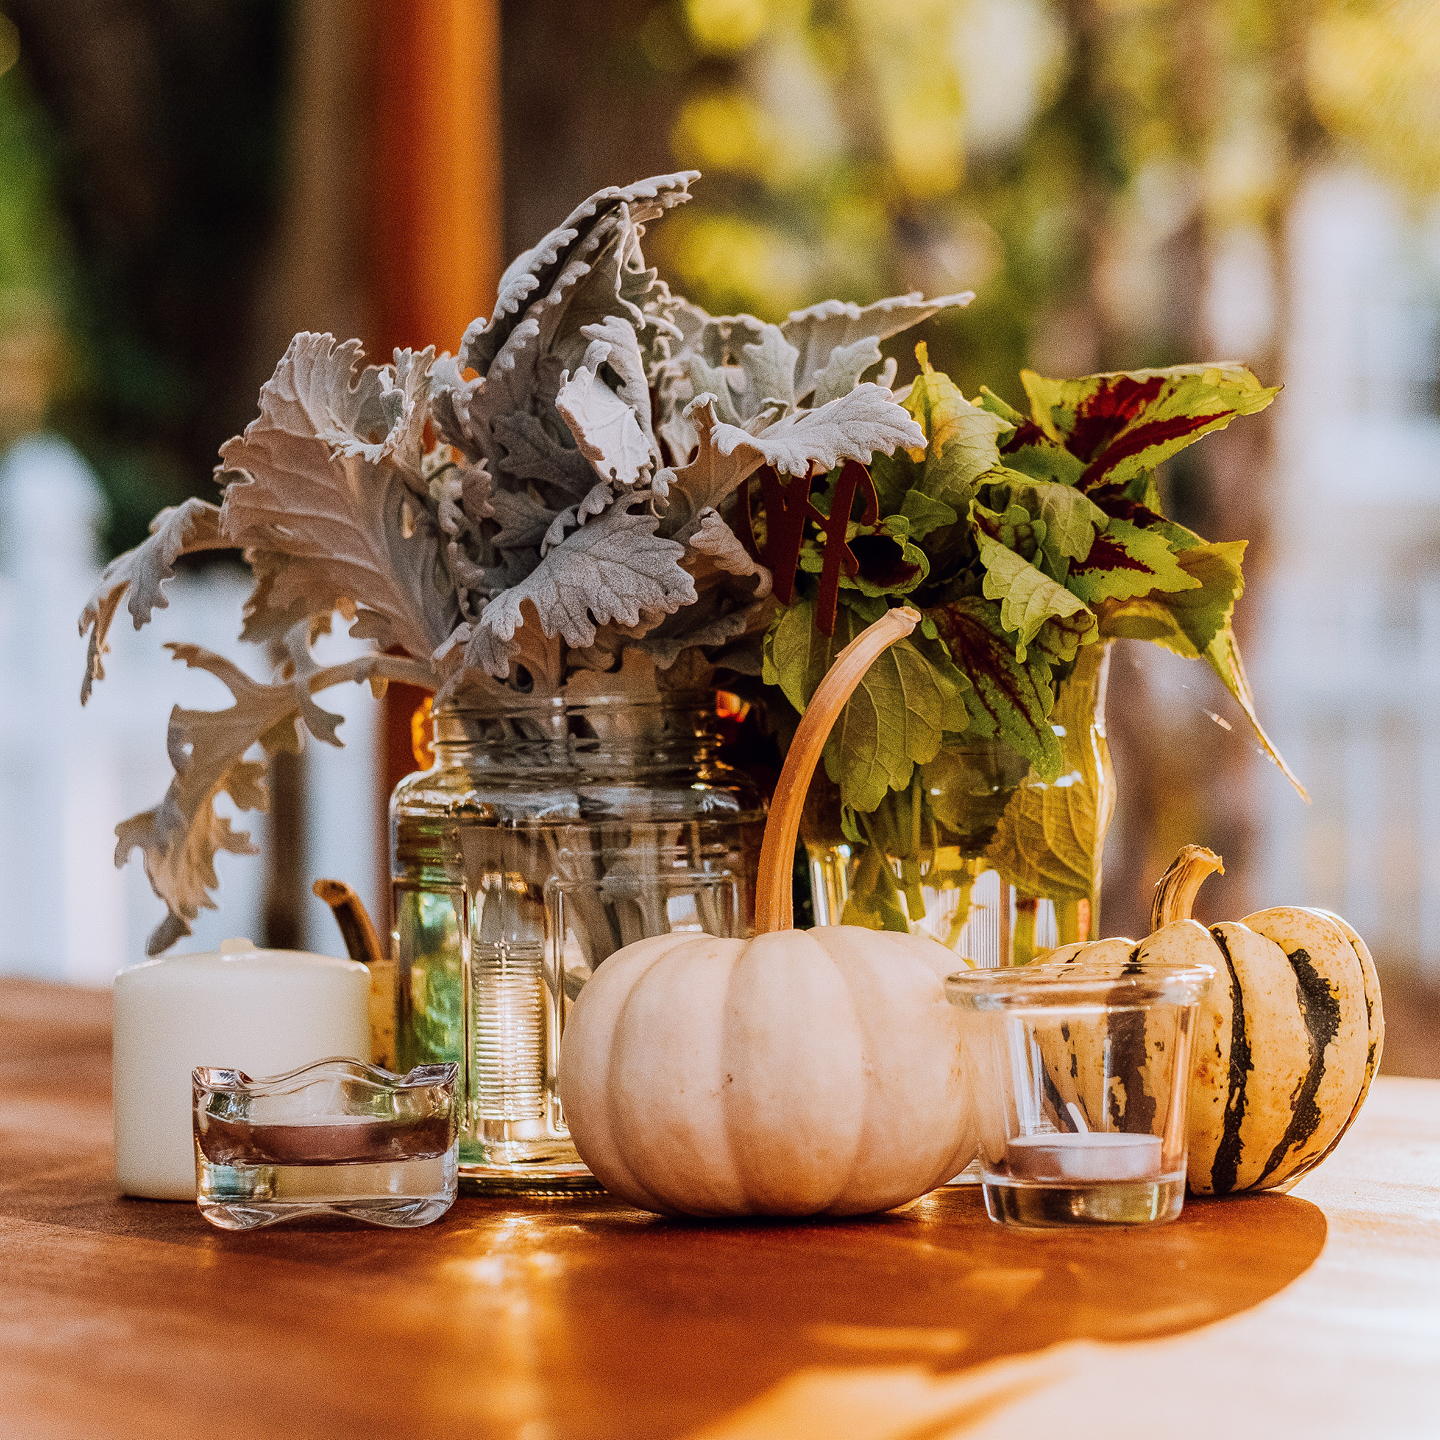 Gorgeous autumn wedding ideas, autumn table centrepiece